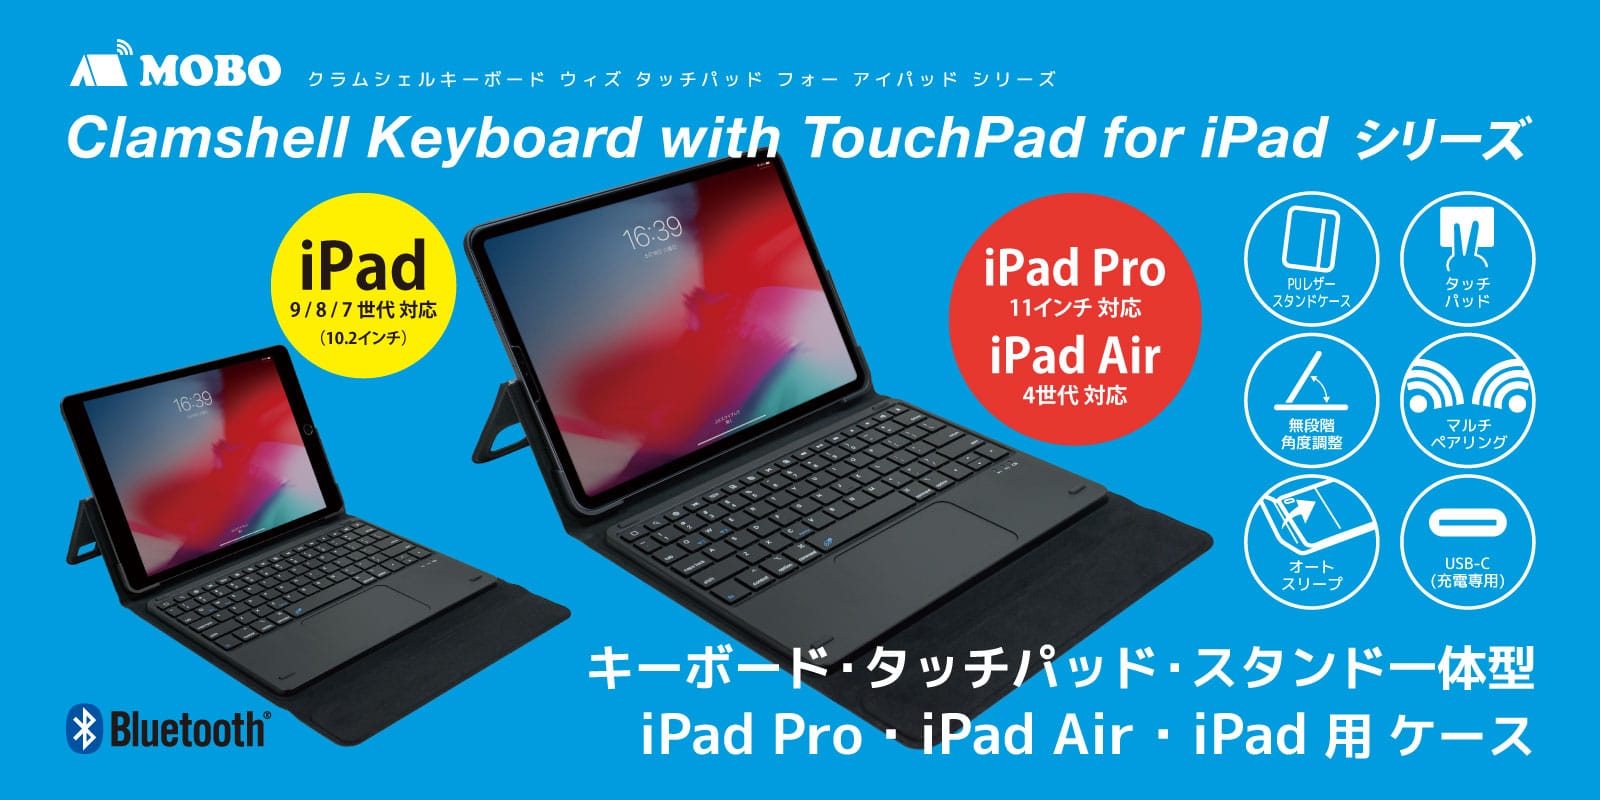 MOBO、キーボード/タッチパッド/スタンド一体型のiPad用ケース発売